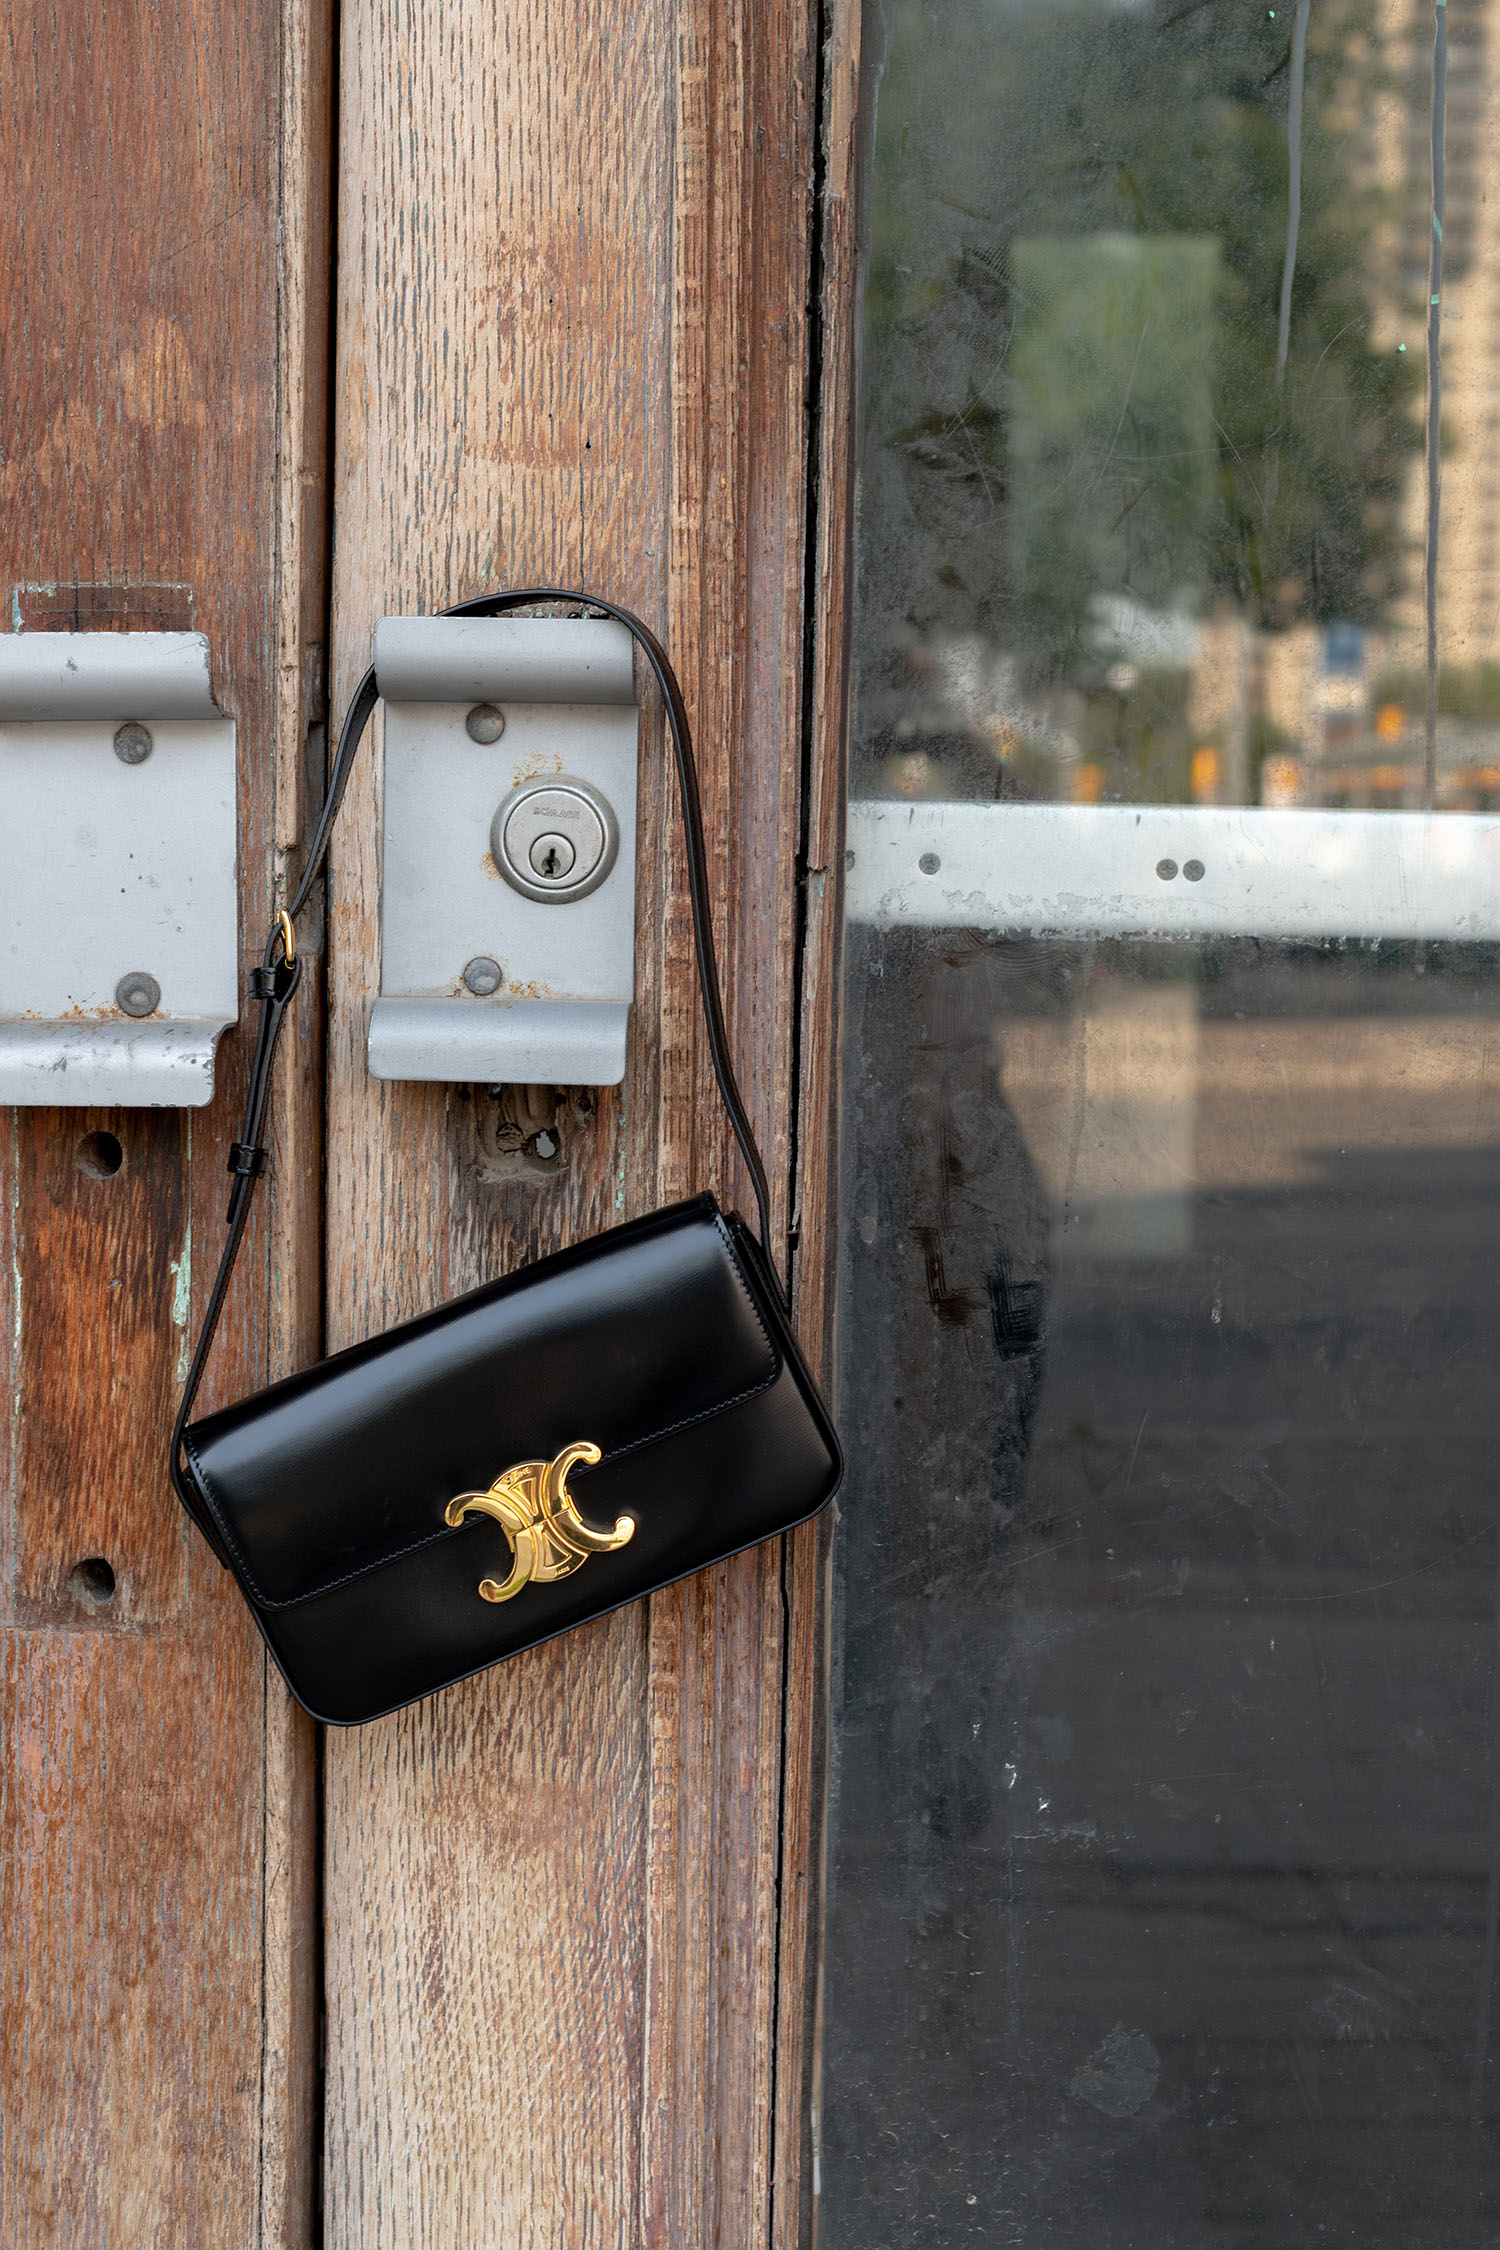 Coco & Voltaire - Celine Triomphe handbag hanging on metal door handle